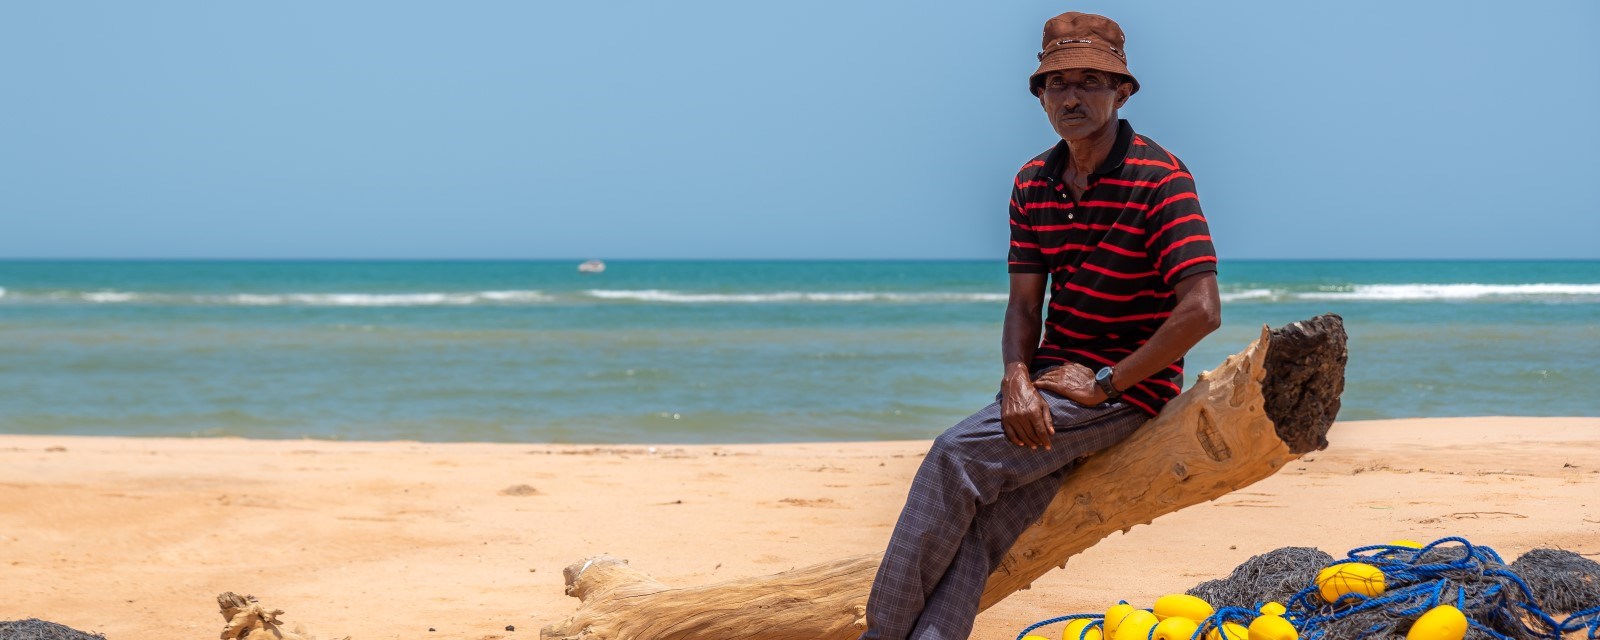 En mann sitter på en tømmerstokk på stranden